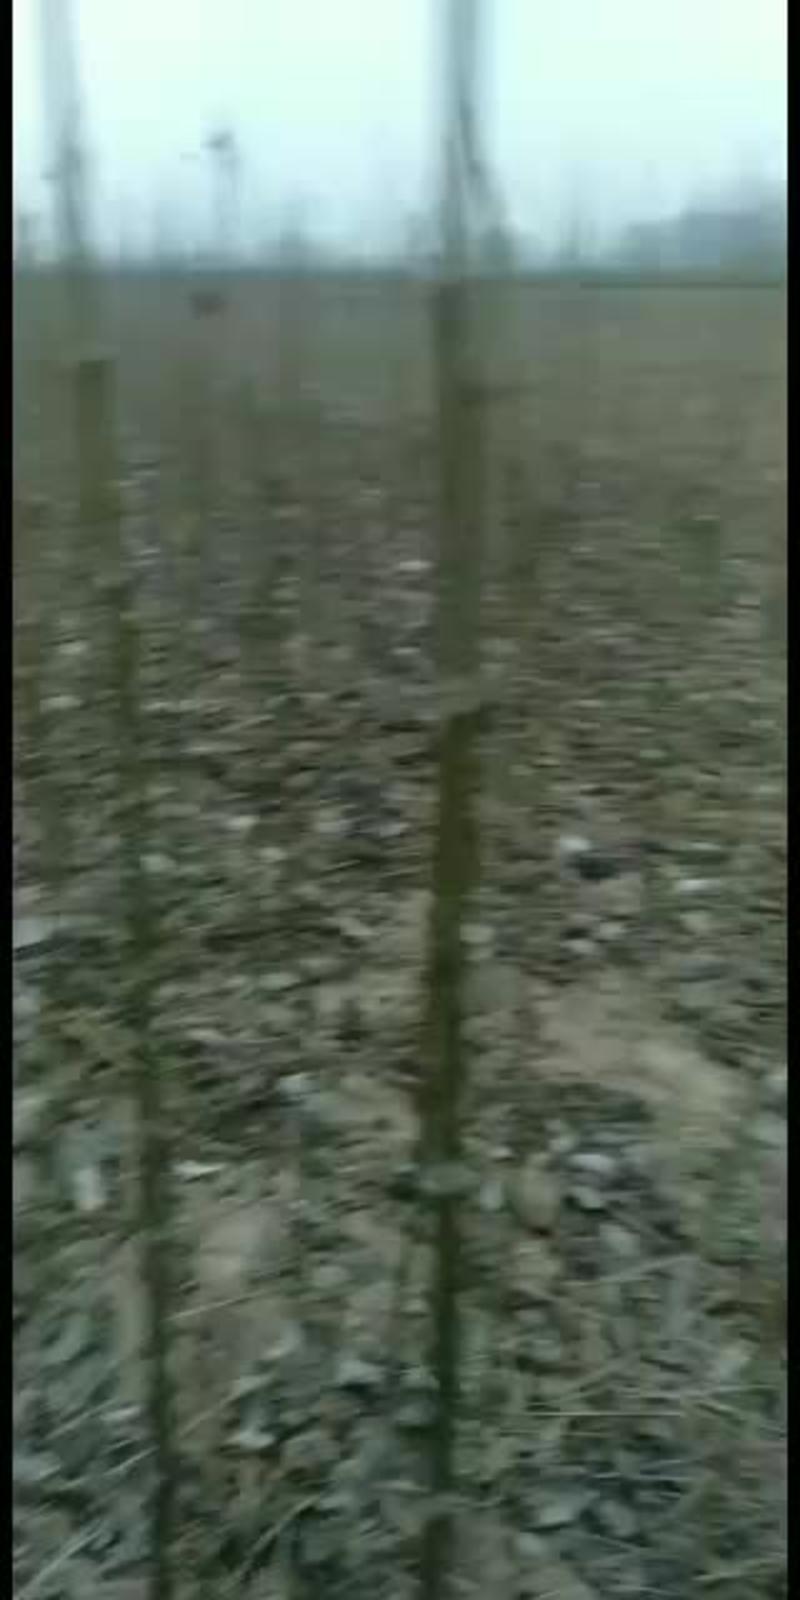 金丝秋树常年批发。一公分至五公分。三米五到四米。规格齐全